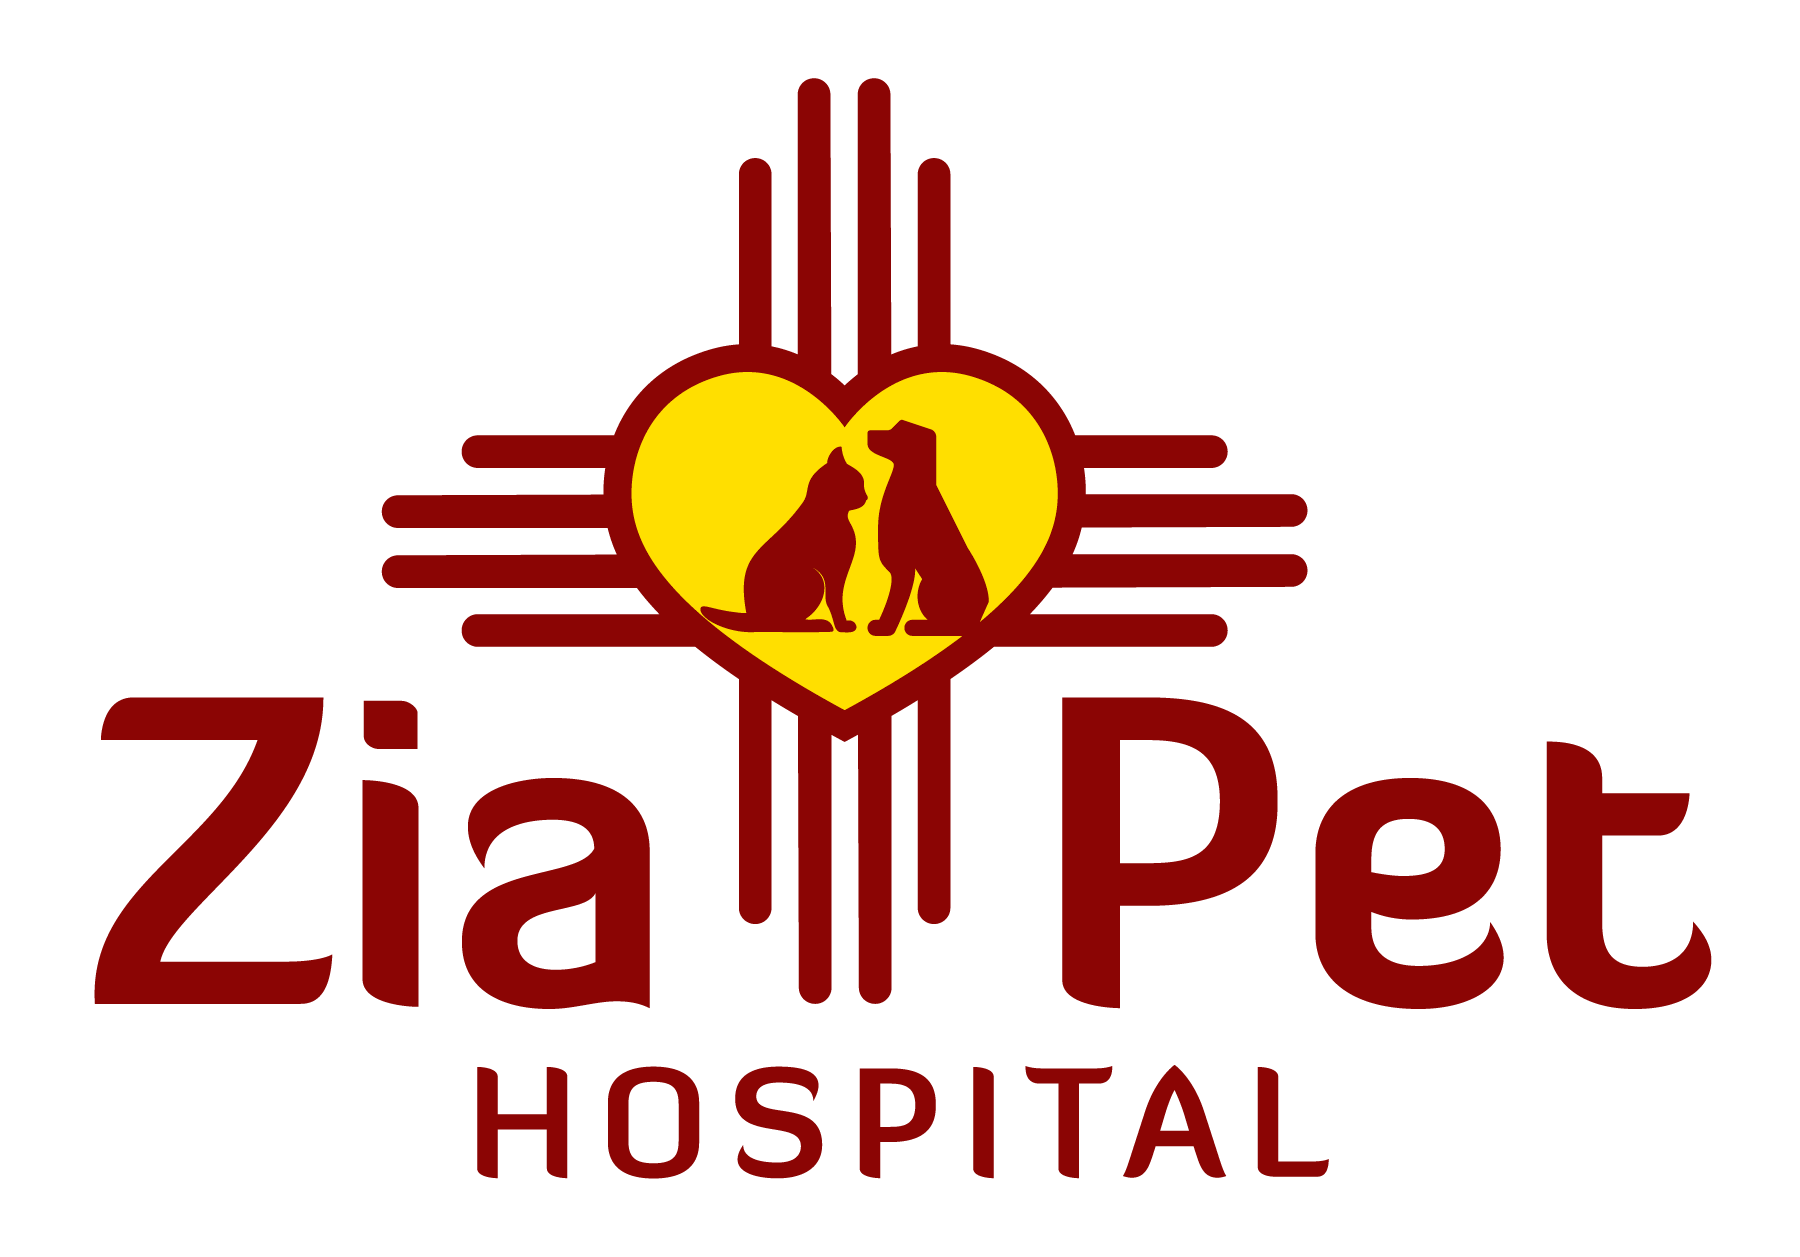 Zia Pet Hospital